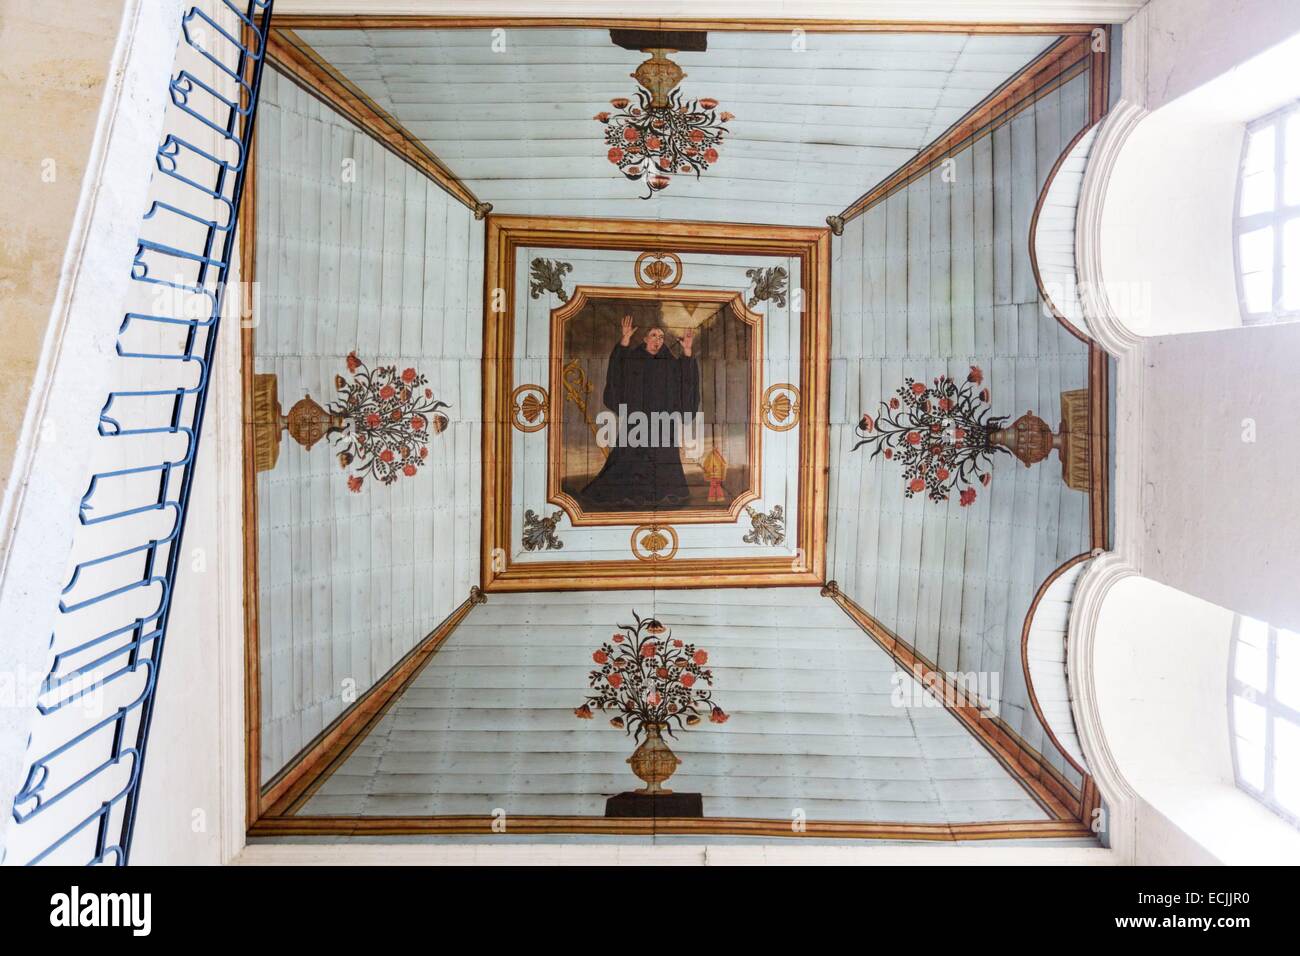 France, Gironde, LA REOLE, peinture sur bois représentant saint Benoît sur le plafond de l'escalier central du Prieuré de Saint Pierre de La Reole datant du 18ème siècle, ancien prieuré bénédictin de Gironde, de l'Ordre de Saint Benoît Banque D'Images